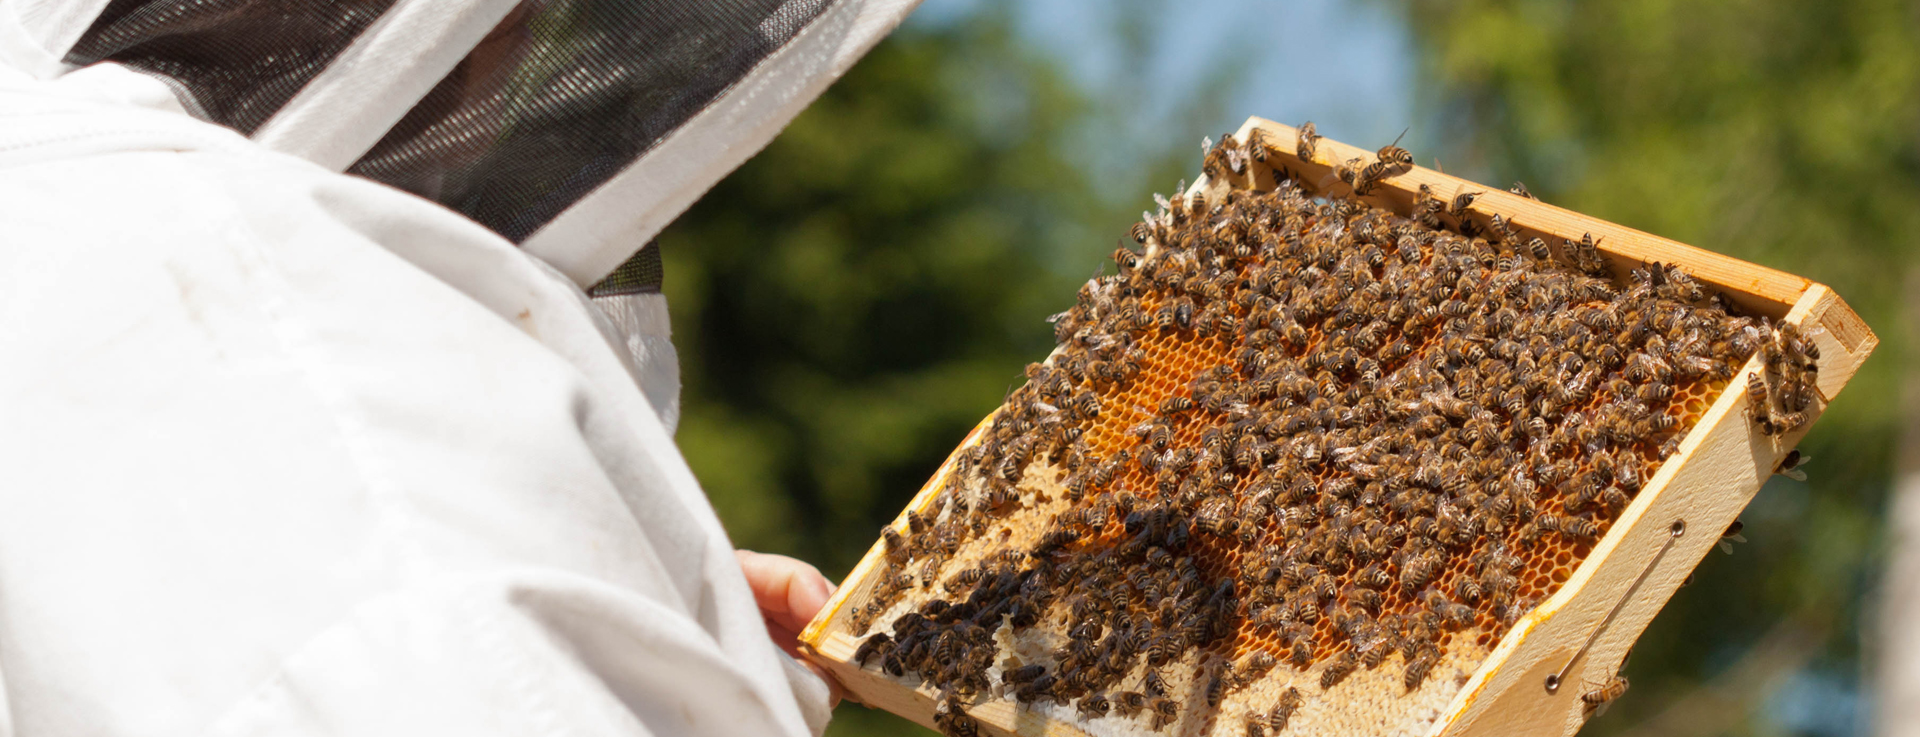 Durchsicht unserer Bienenvölker